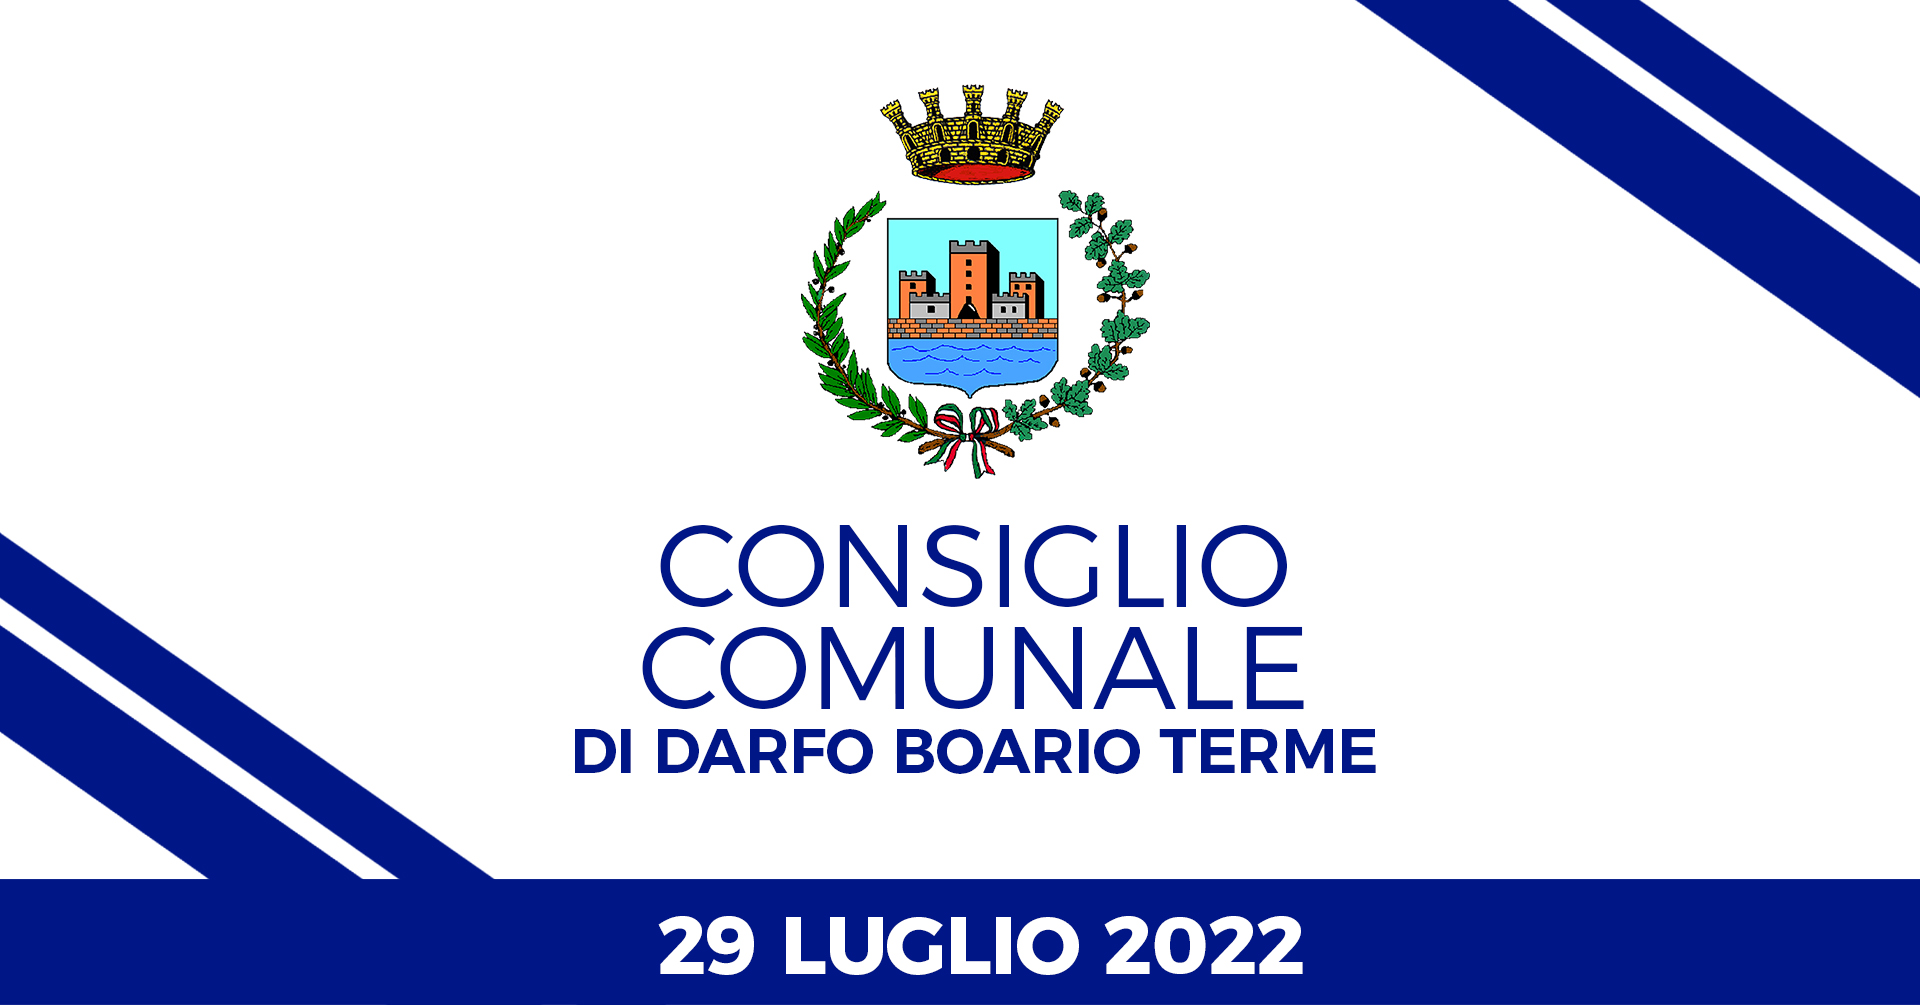 Consiglio Comunale di Darfo Boario Terme del 29 luglio 2022